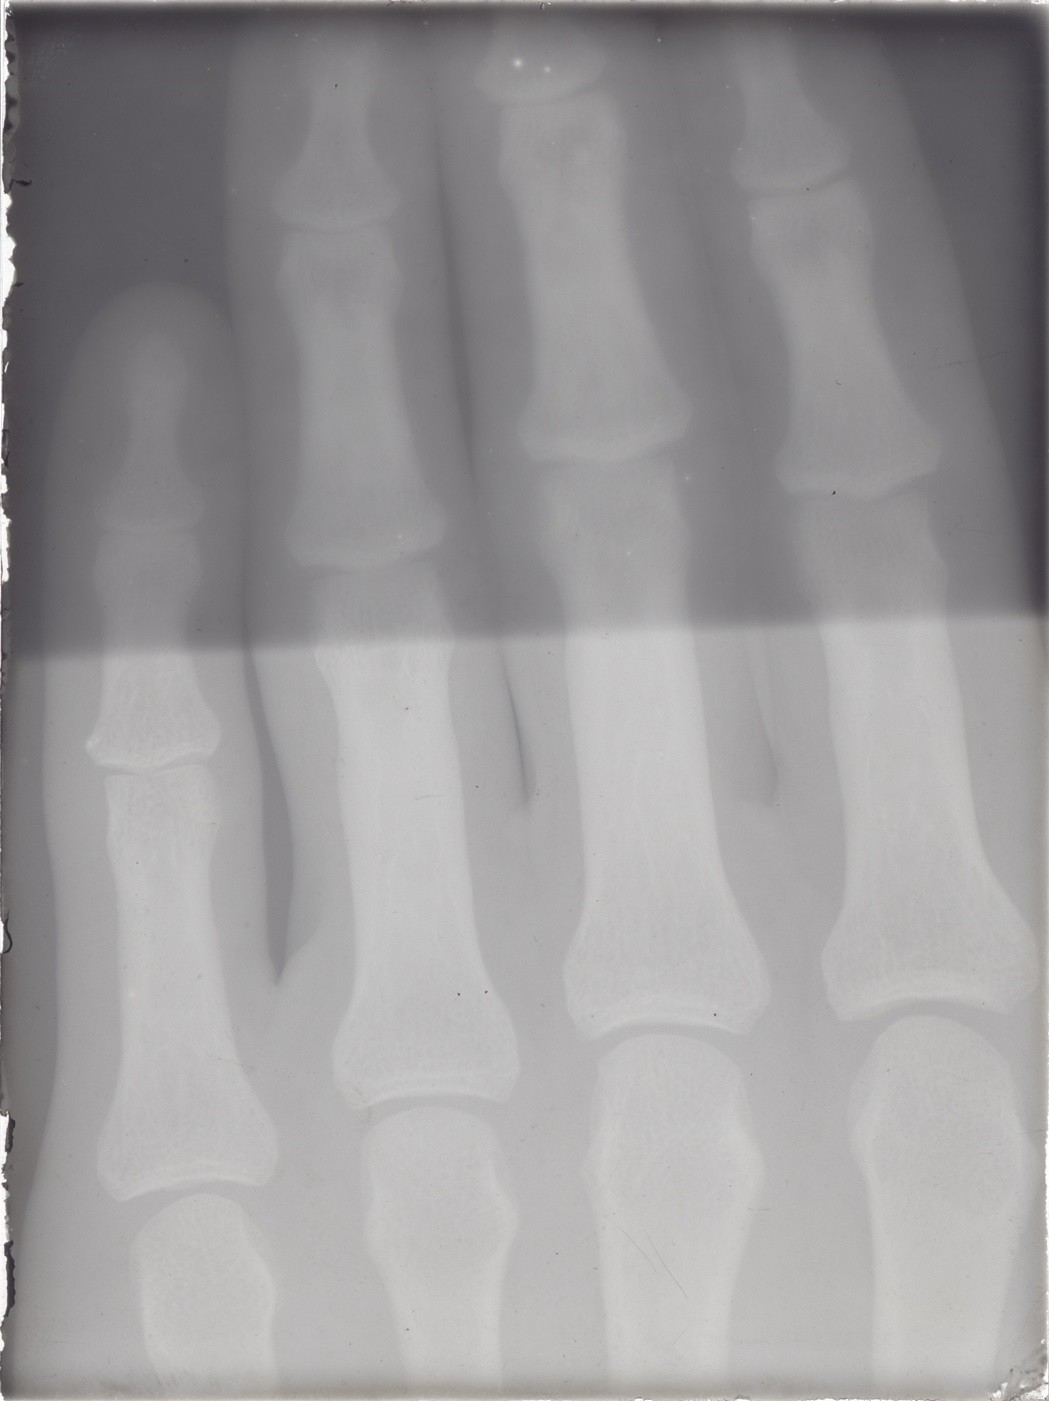 Versuch: Röntgenaufnahme einer Hand (Mai-Juli 1896), 86358 gp (Deutsches Röntgen-Museum CC BY-NC-SA)